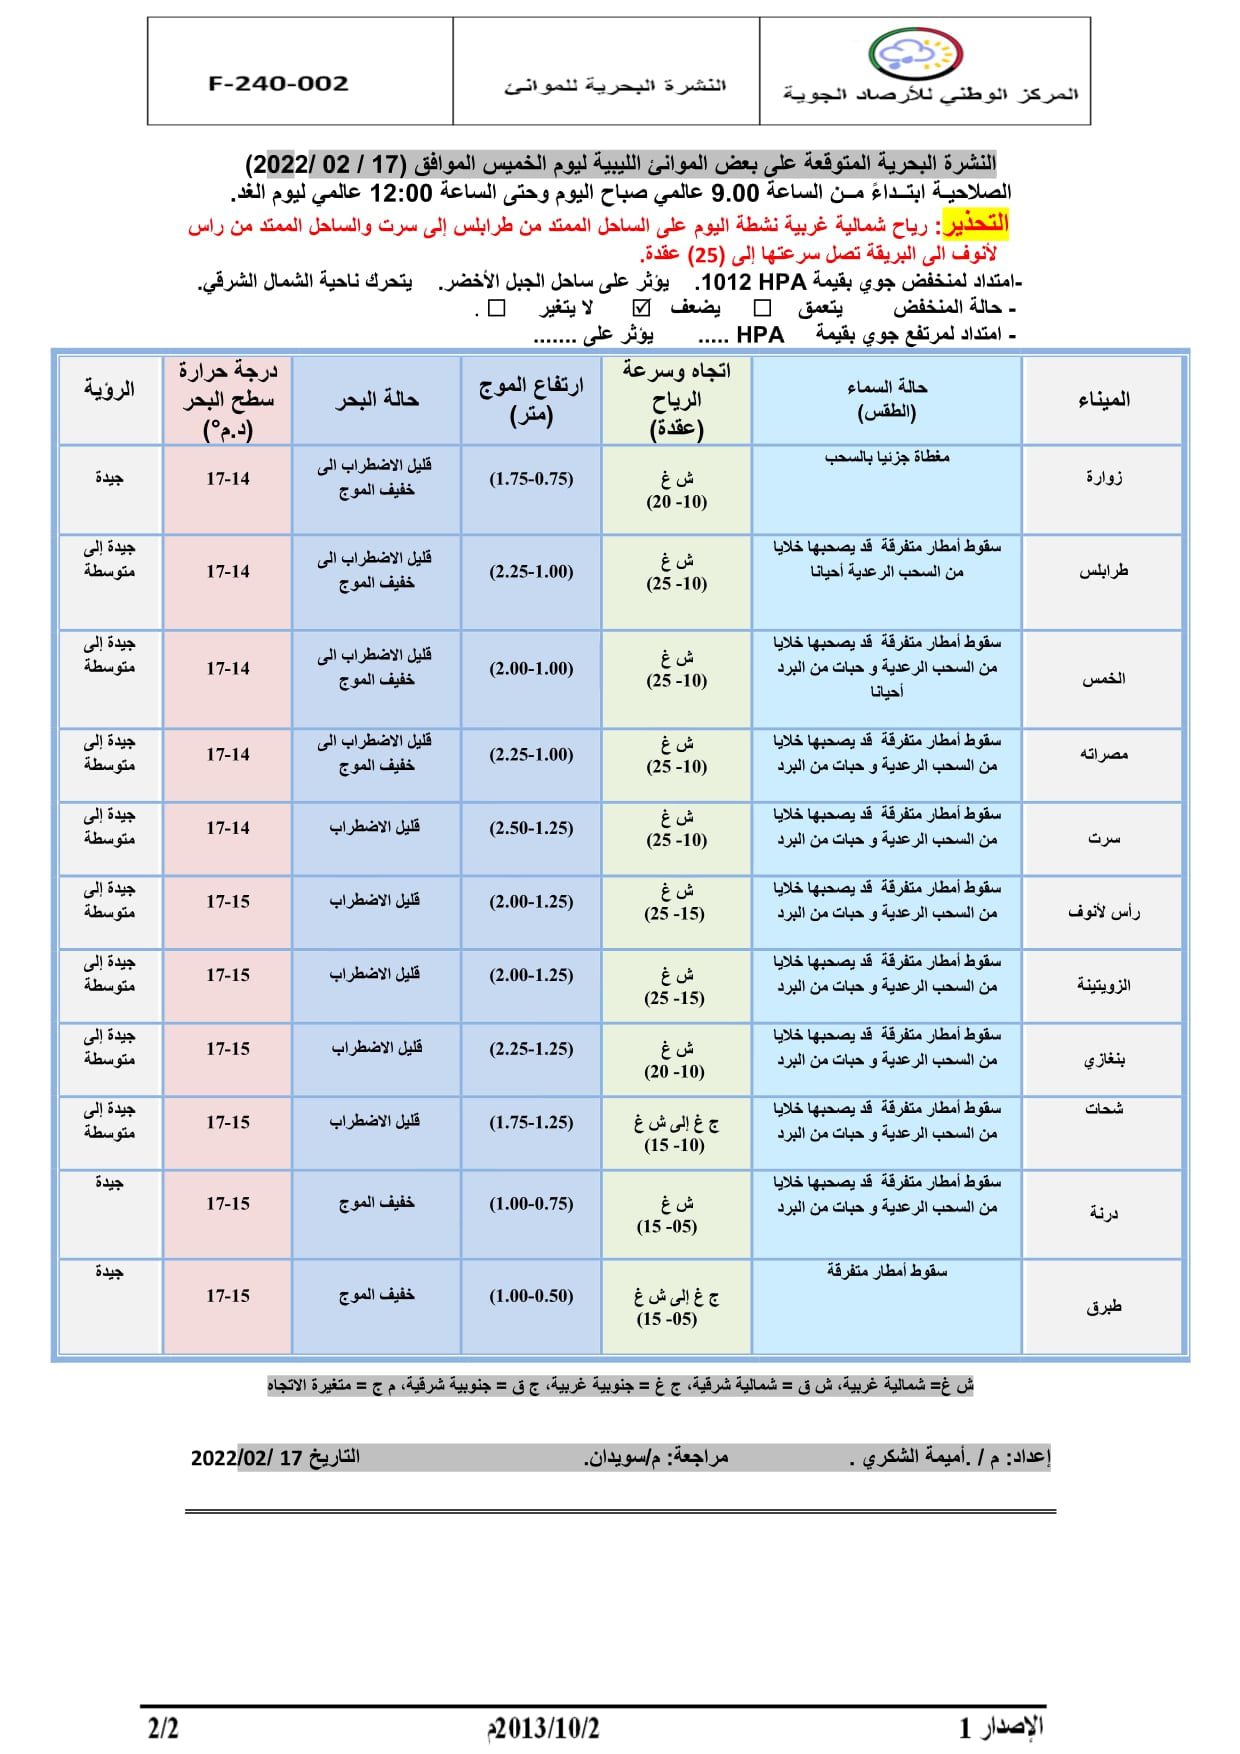 الأحوال الجوية المتوقعة على ليبيا خلال الثلاثة الأيام القادمة بداية من اليوم الخميس 17–02–2022